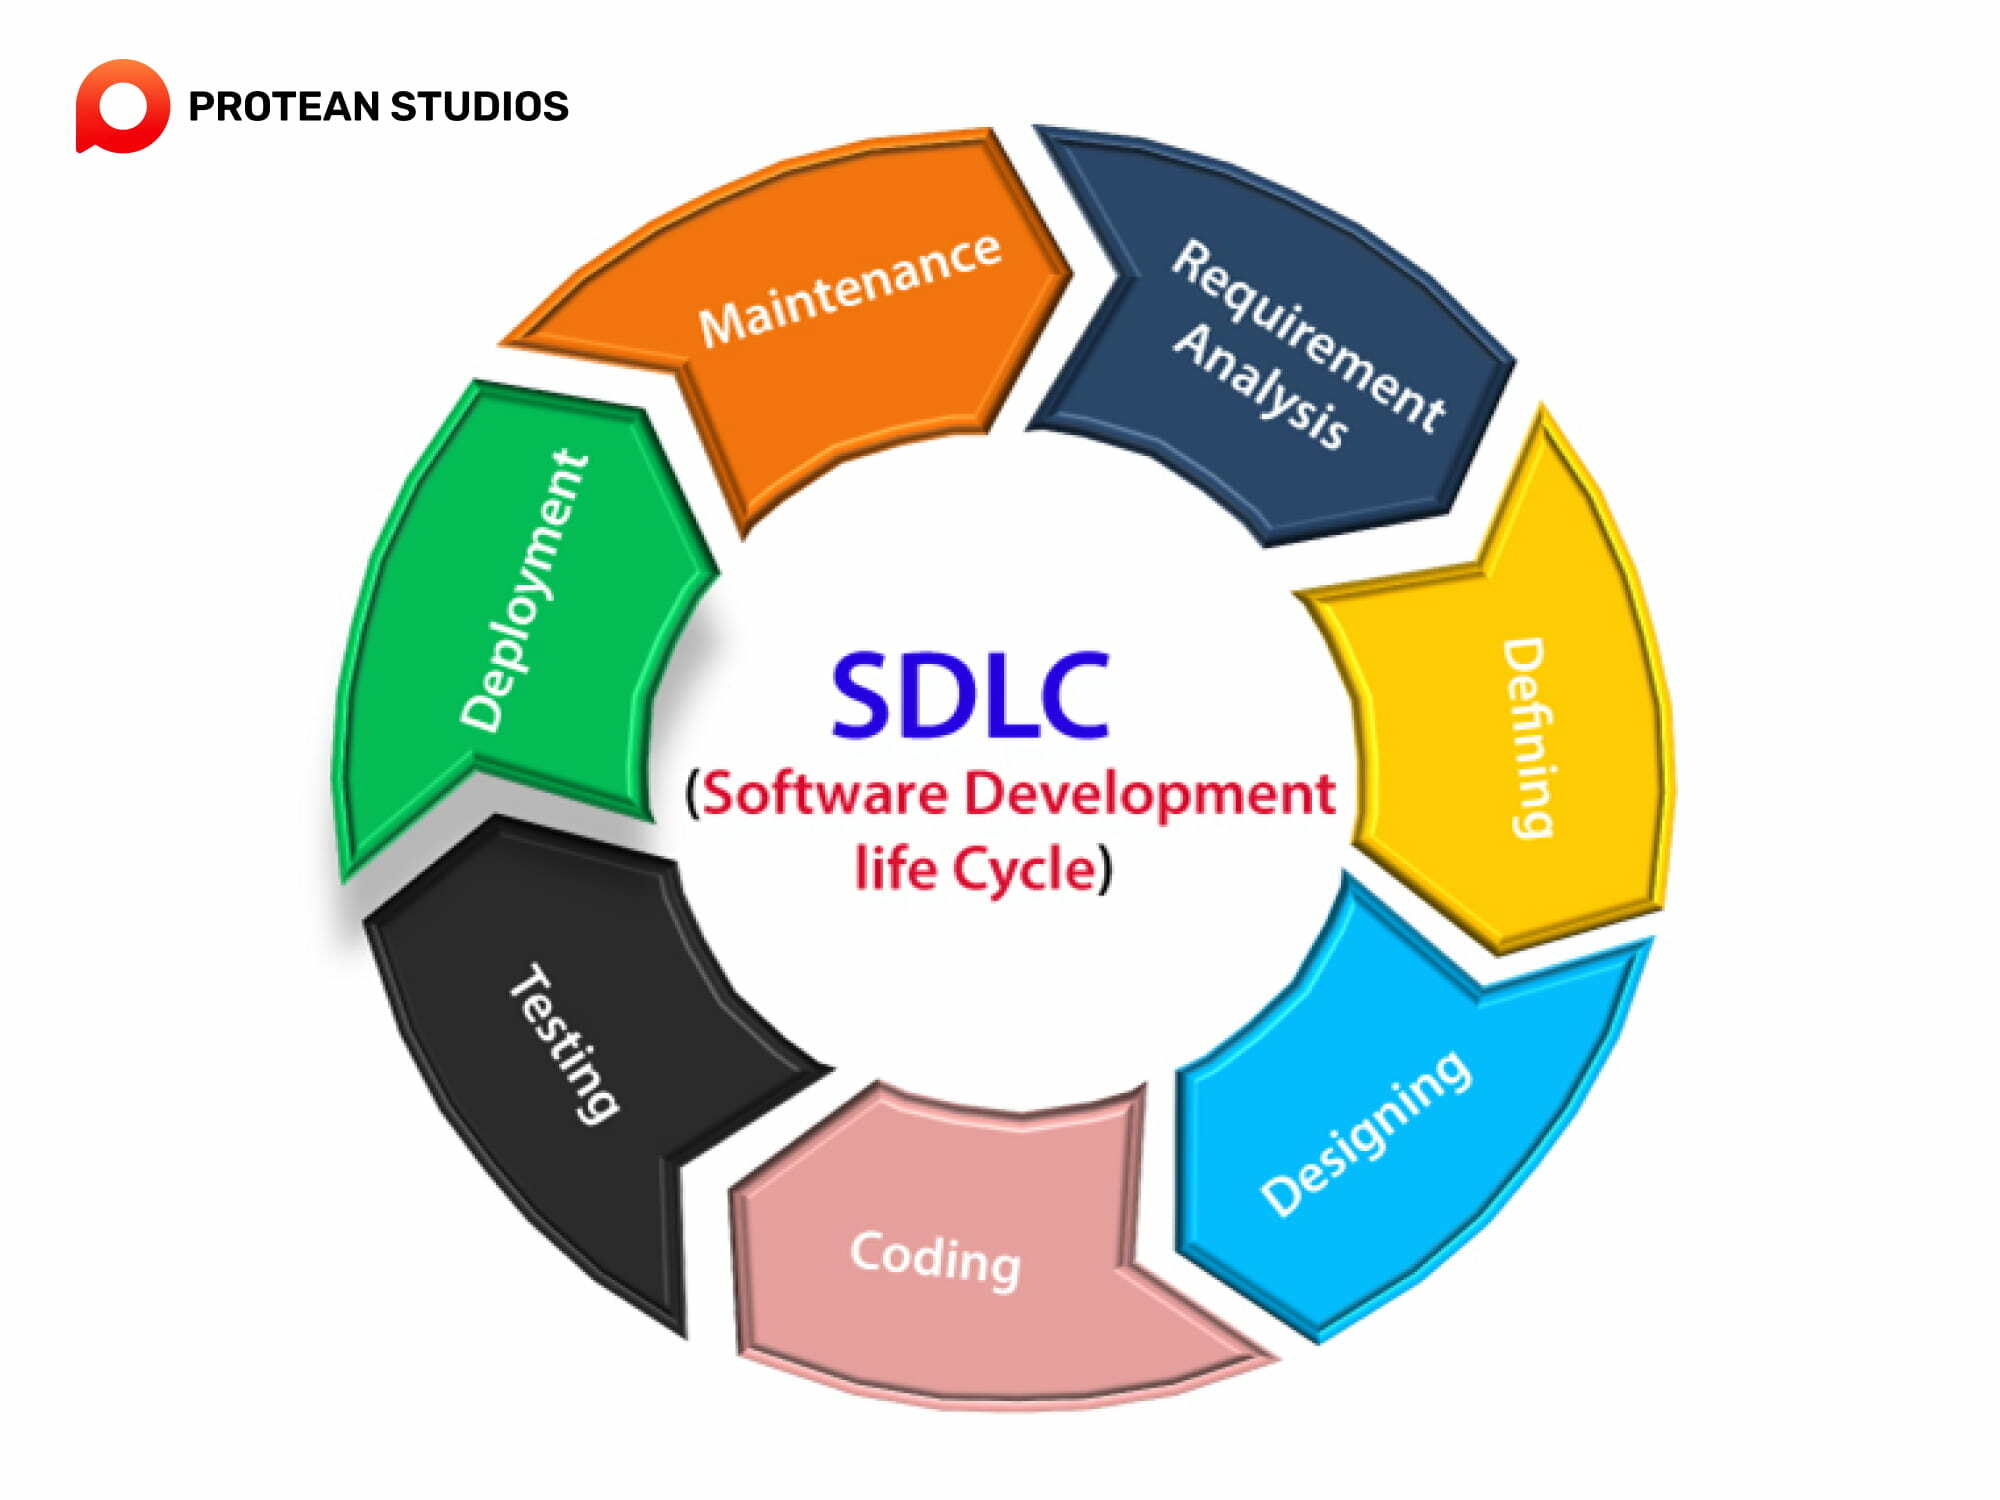 Some steps of the SDLC